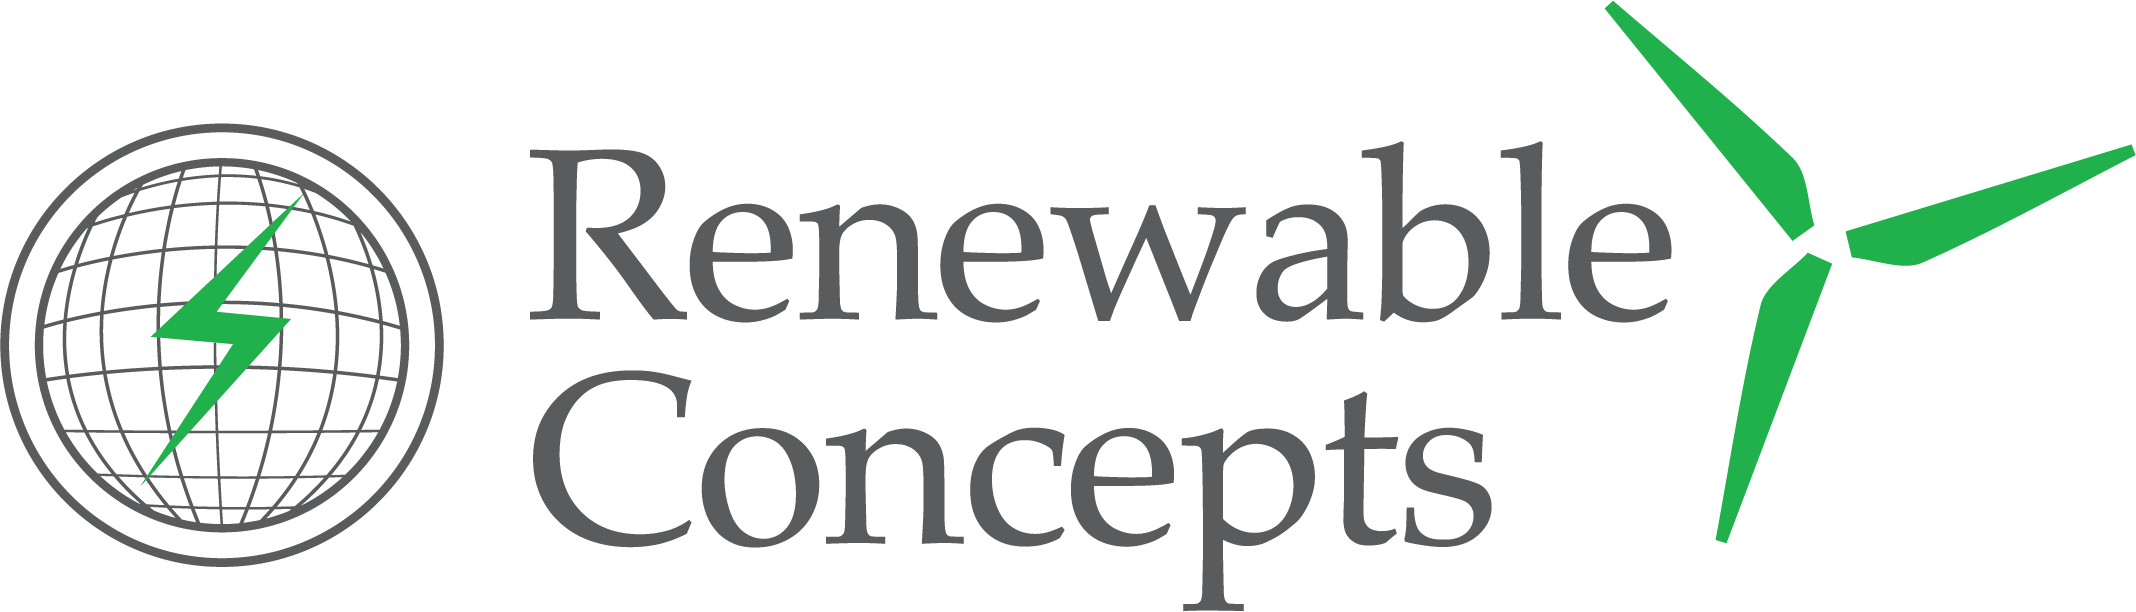 renewable concepts logo